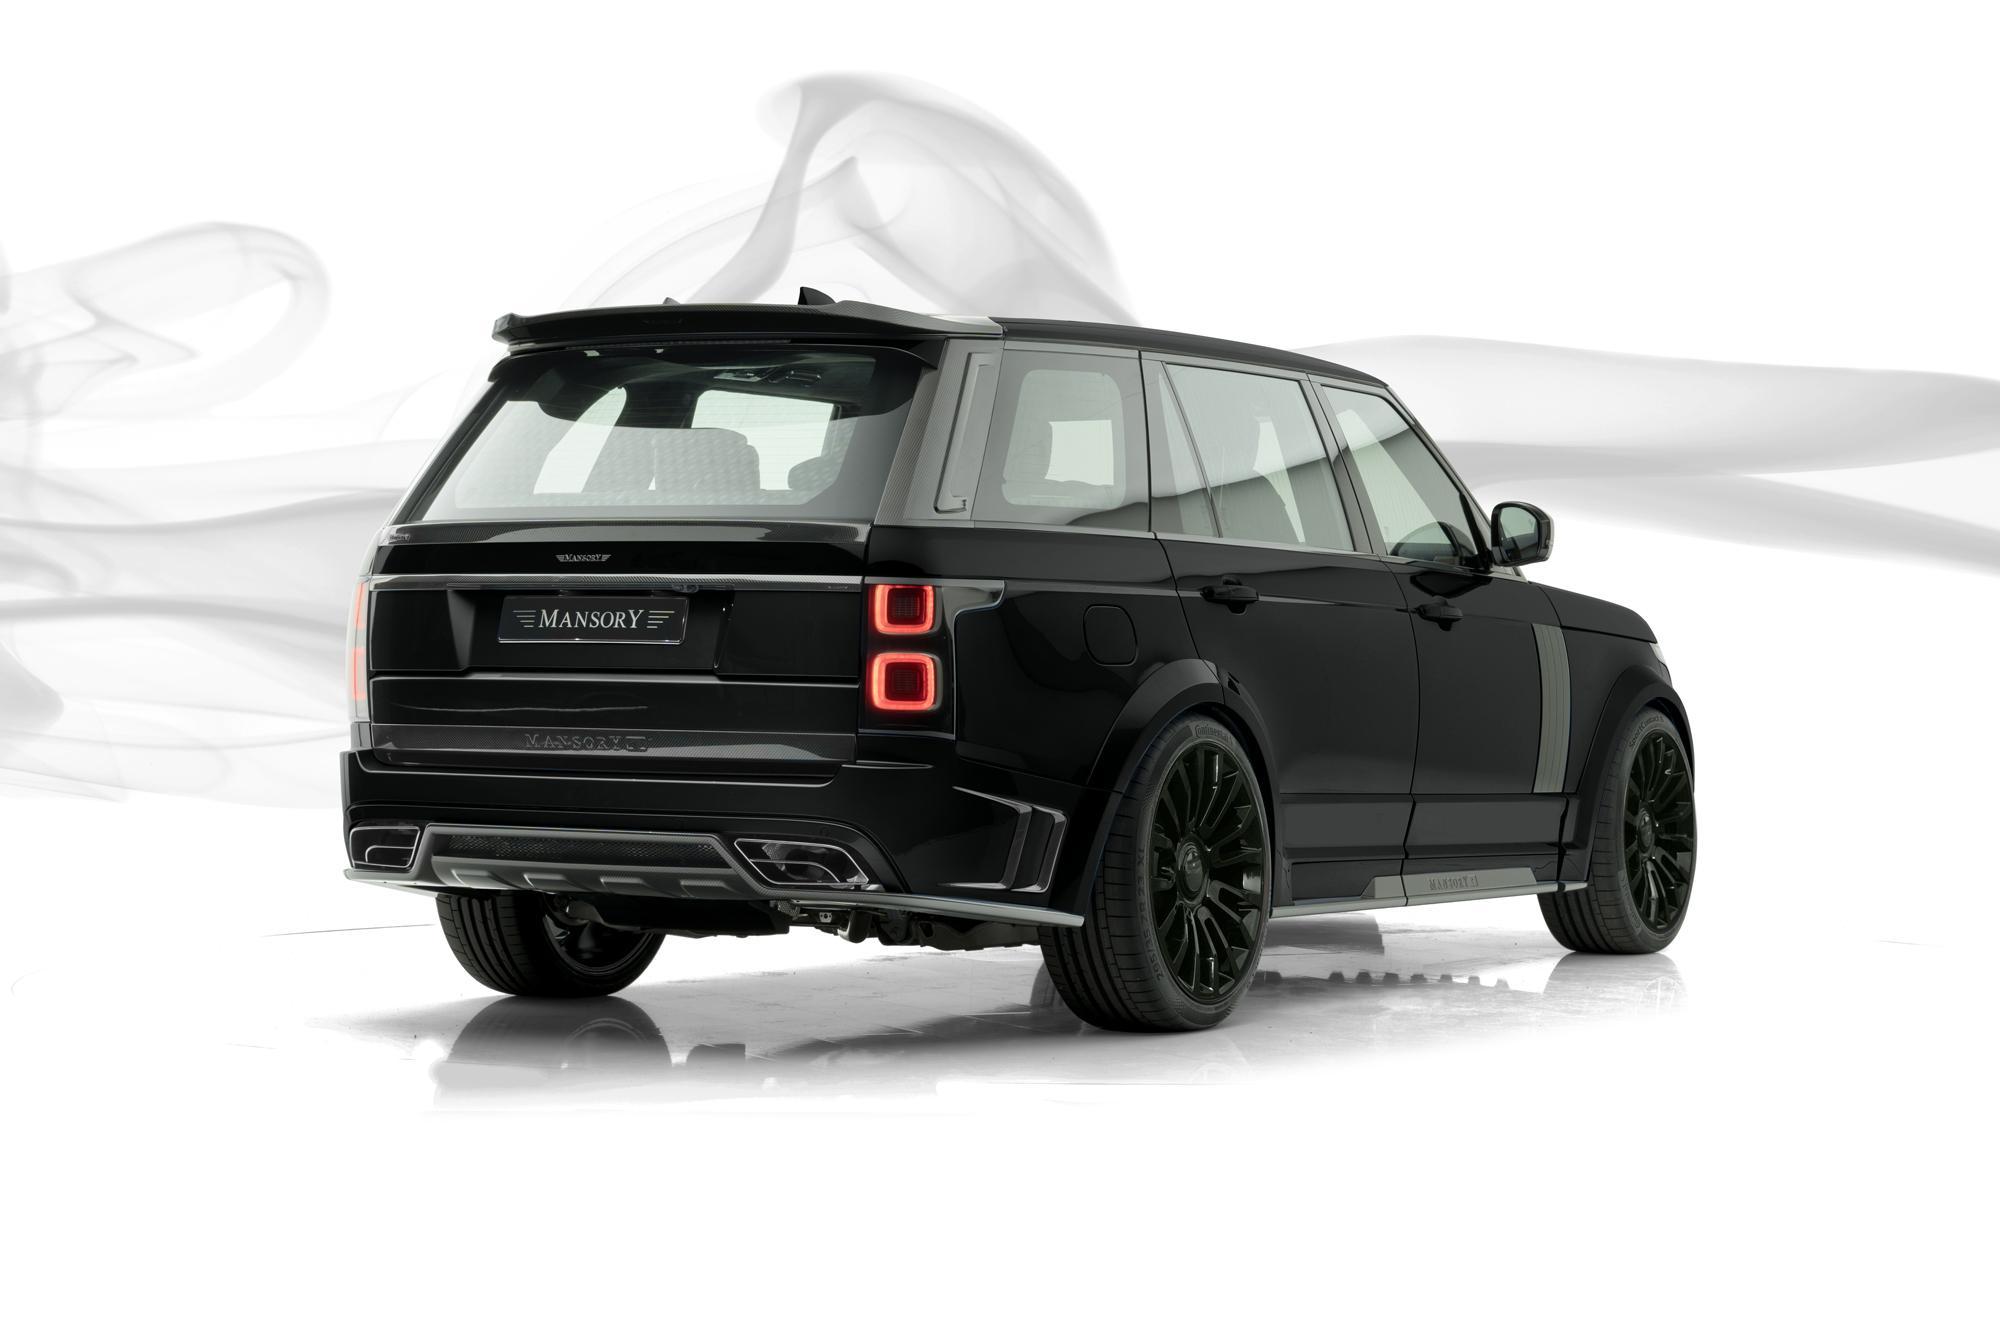 Mansory body kit for Range Rover latest model